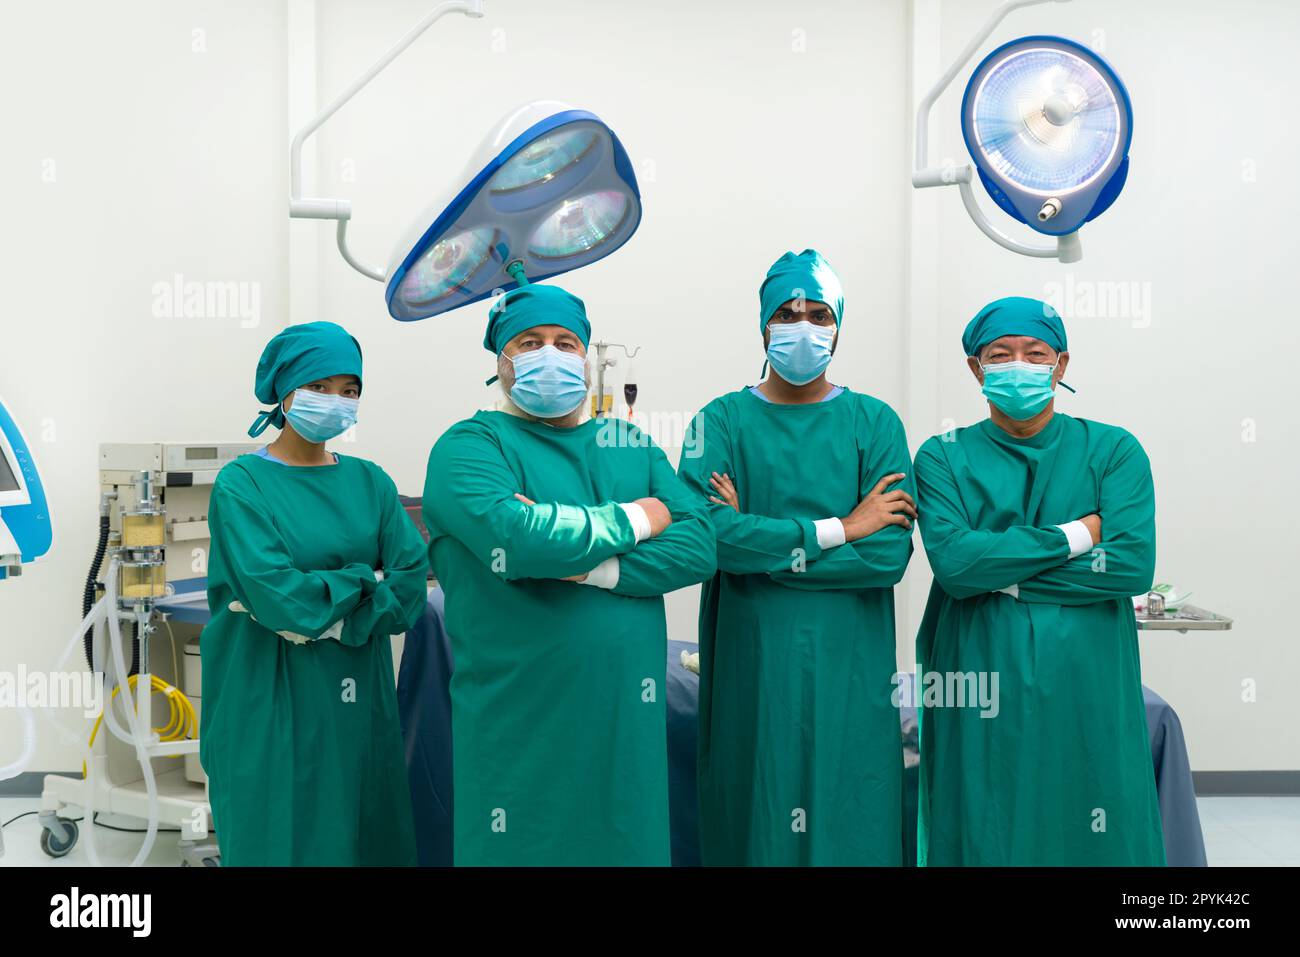 Chirurg und Krankenschwester im grünen Operationskittel stehen sicher mit gefaltetem Arm, bevor sie eine Operation im Operationssaal durchführen. Stockfoto